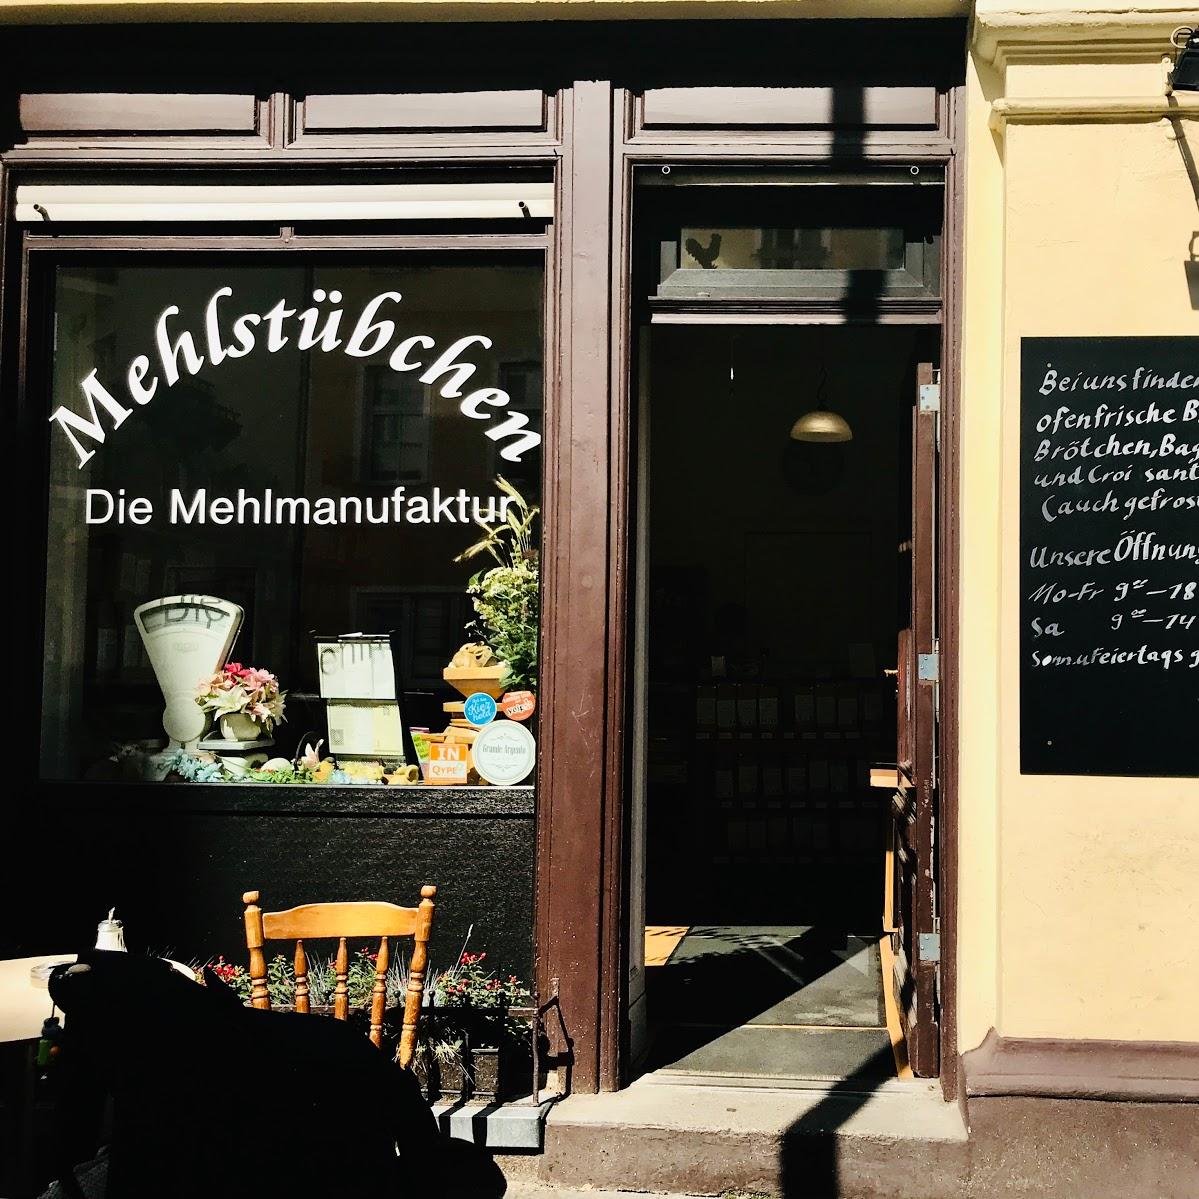 Restaurant "Mehlstübchen" in Berlin